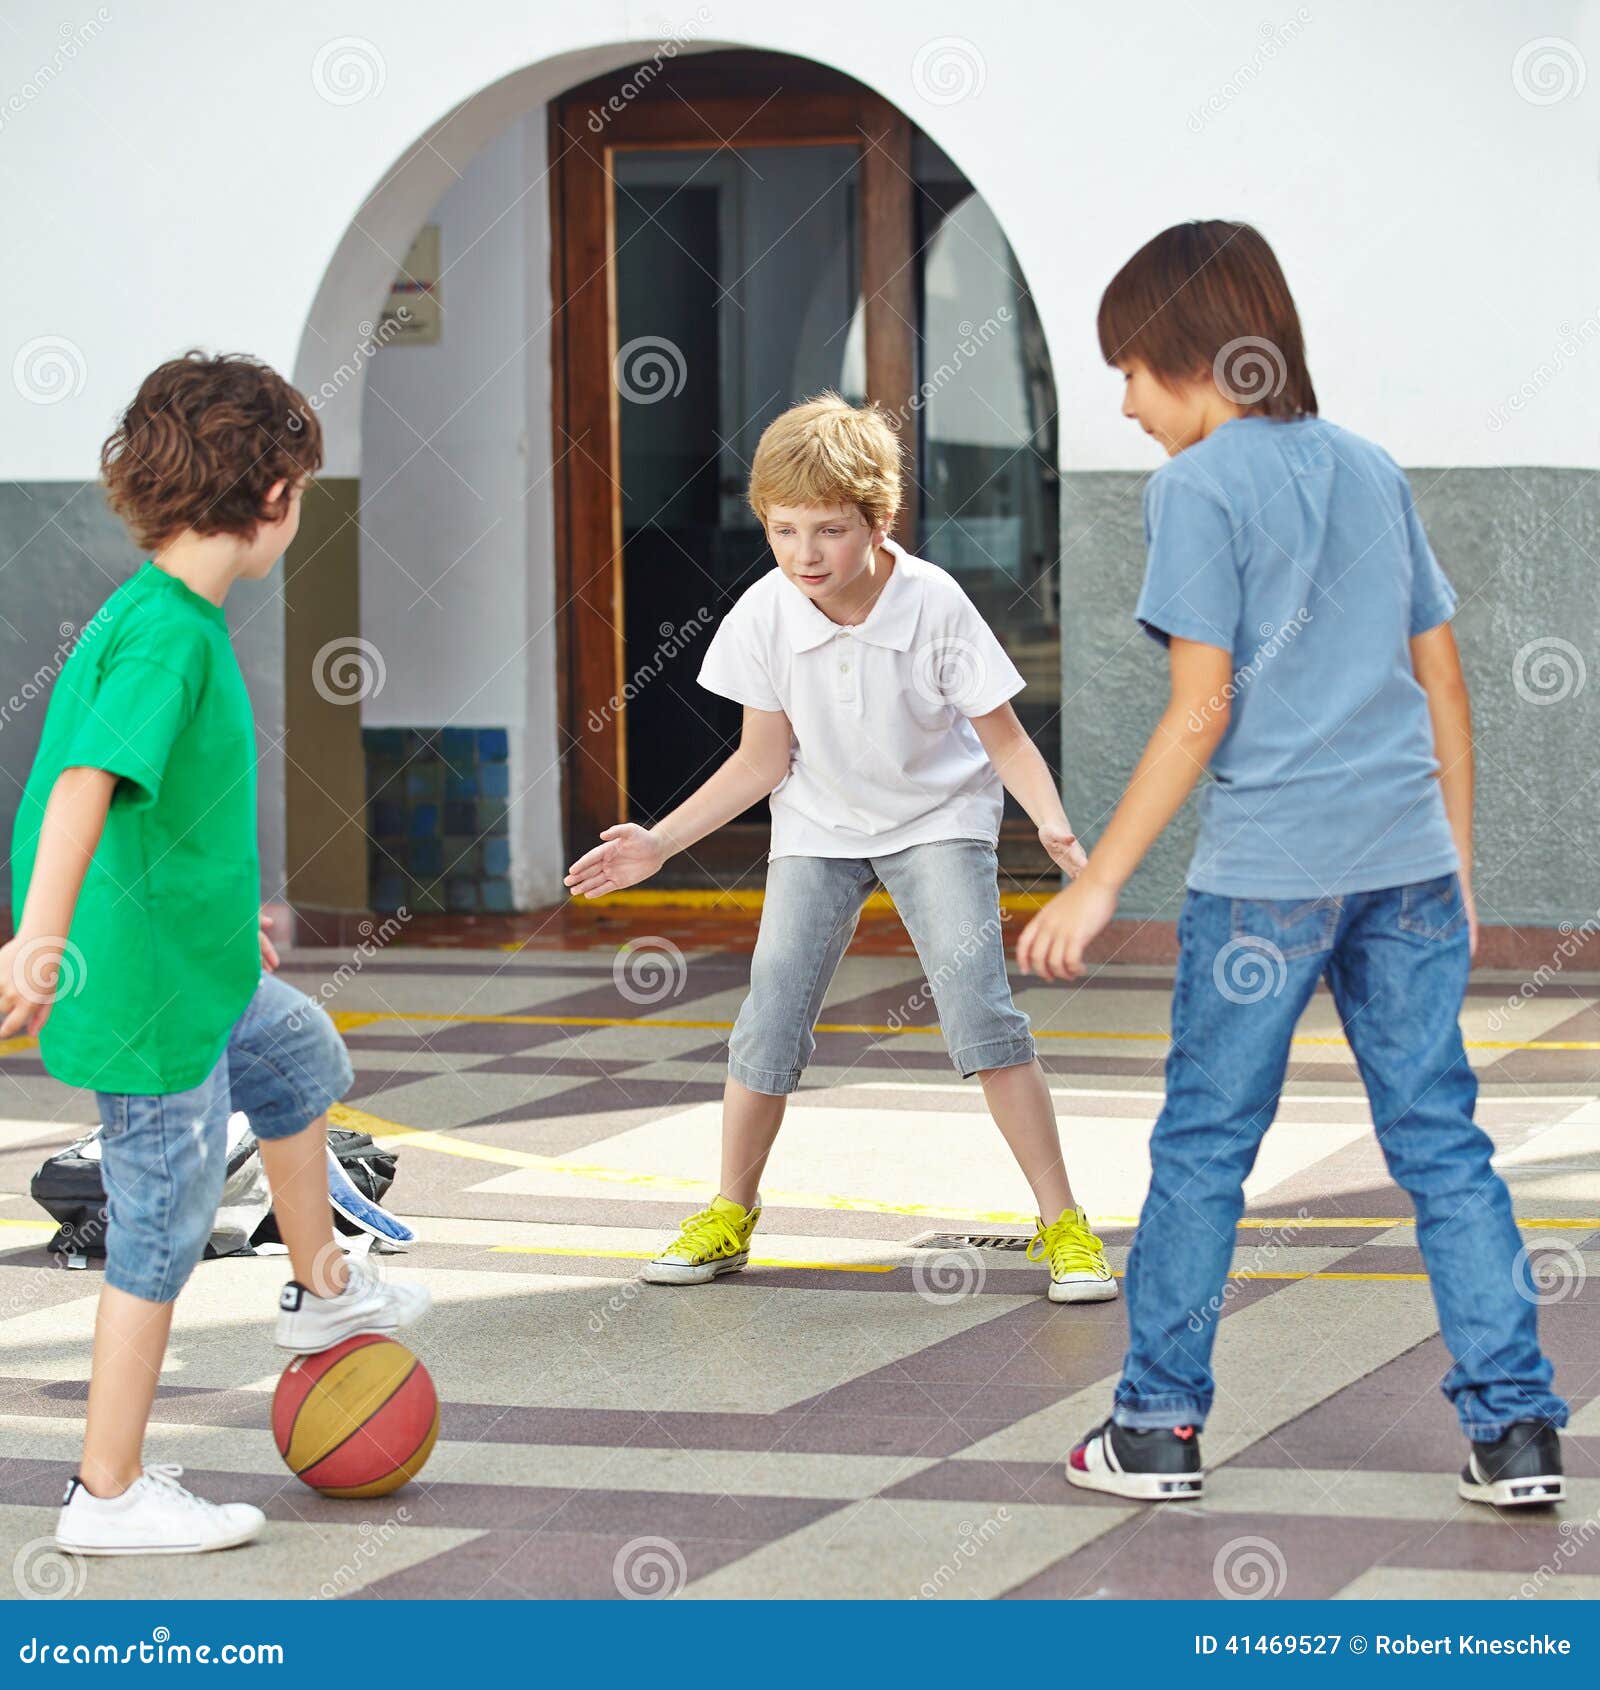 informeel huiswerk maken afdrijven Jongens die met bal spelen stock afbeelding. Image of sport - 41469527